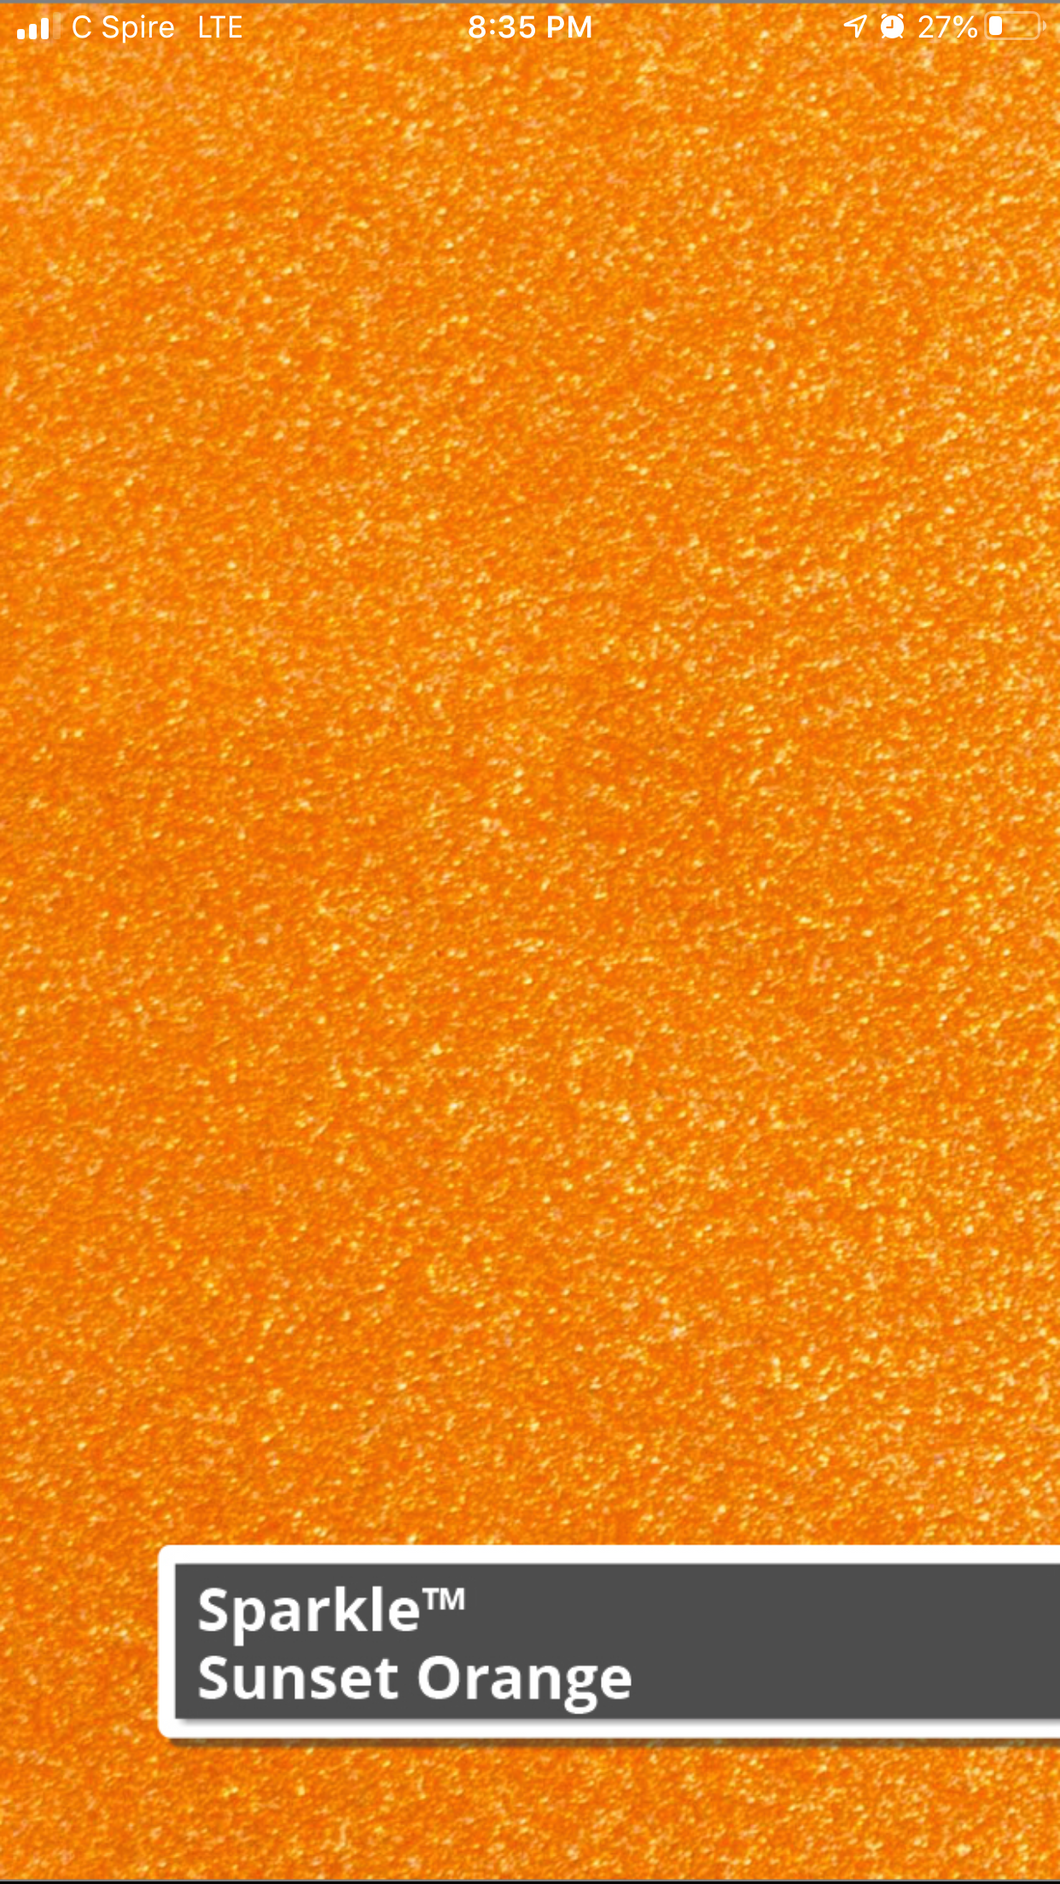 Siser Sparkle (Sunset Orange)